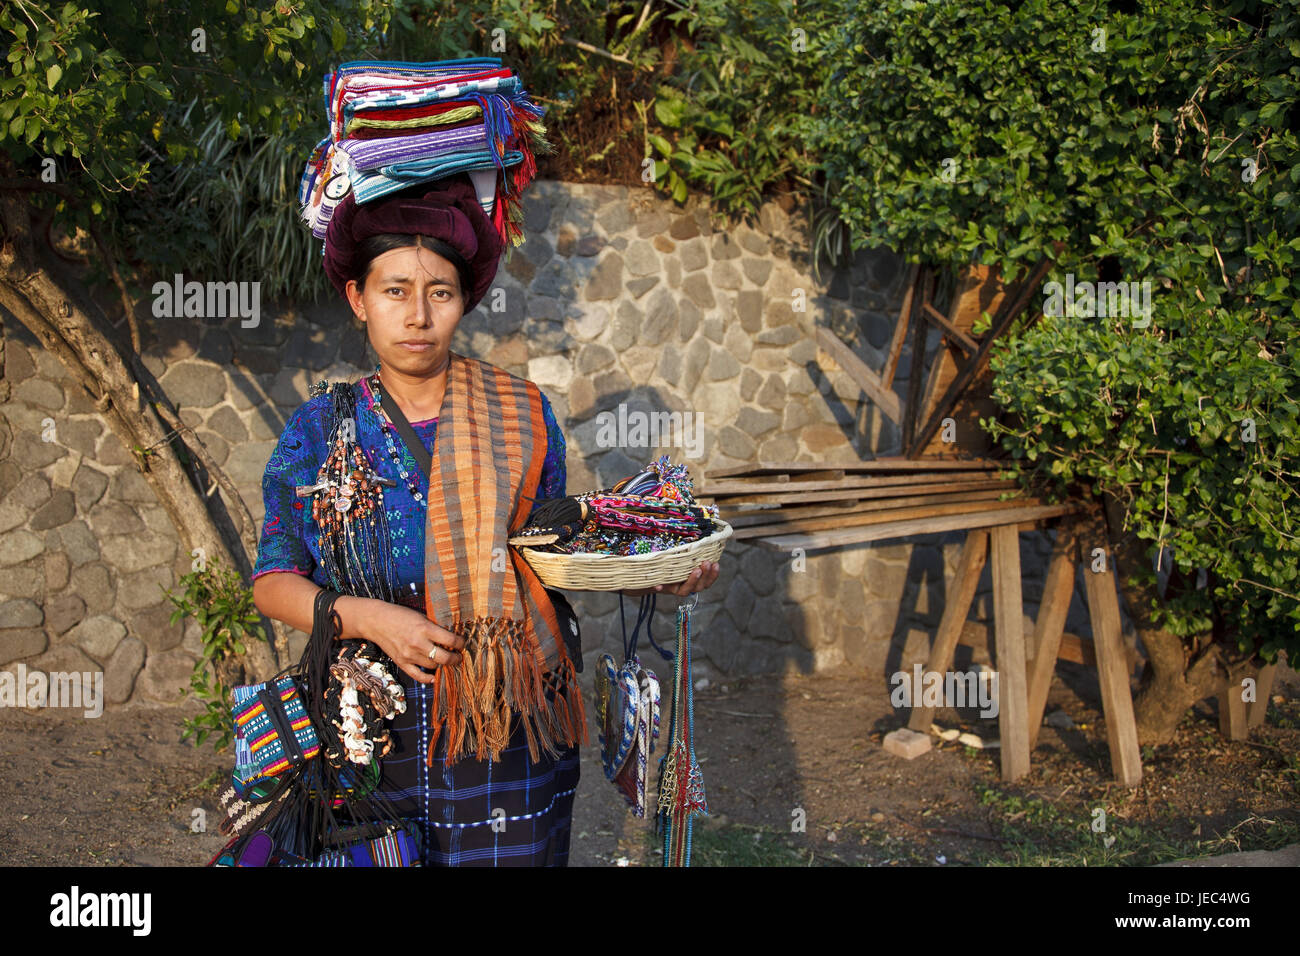 Guatemala, Atitlan lake, woman, Maya, selling, no model release, Stock Photo